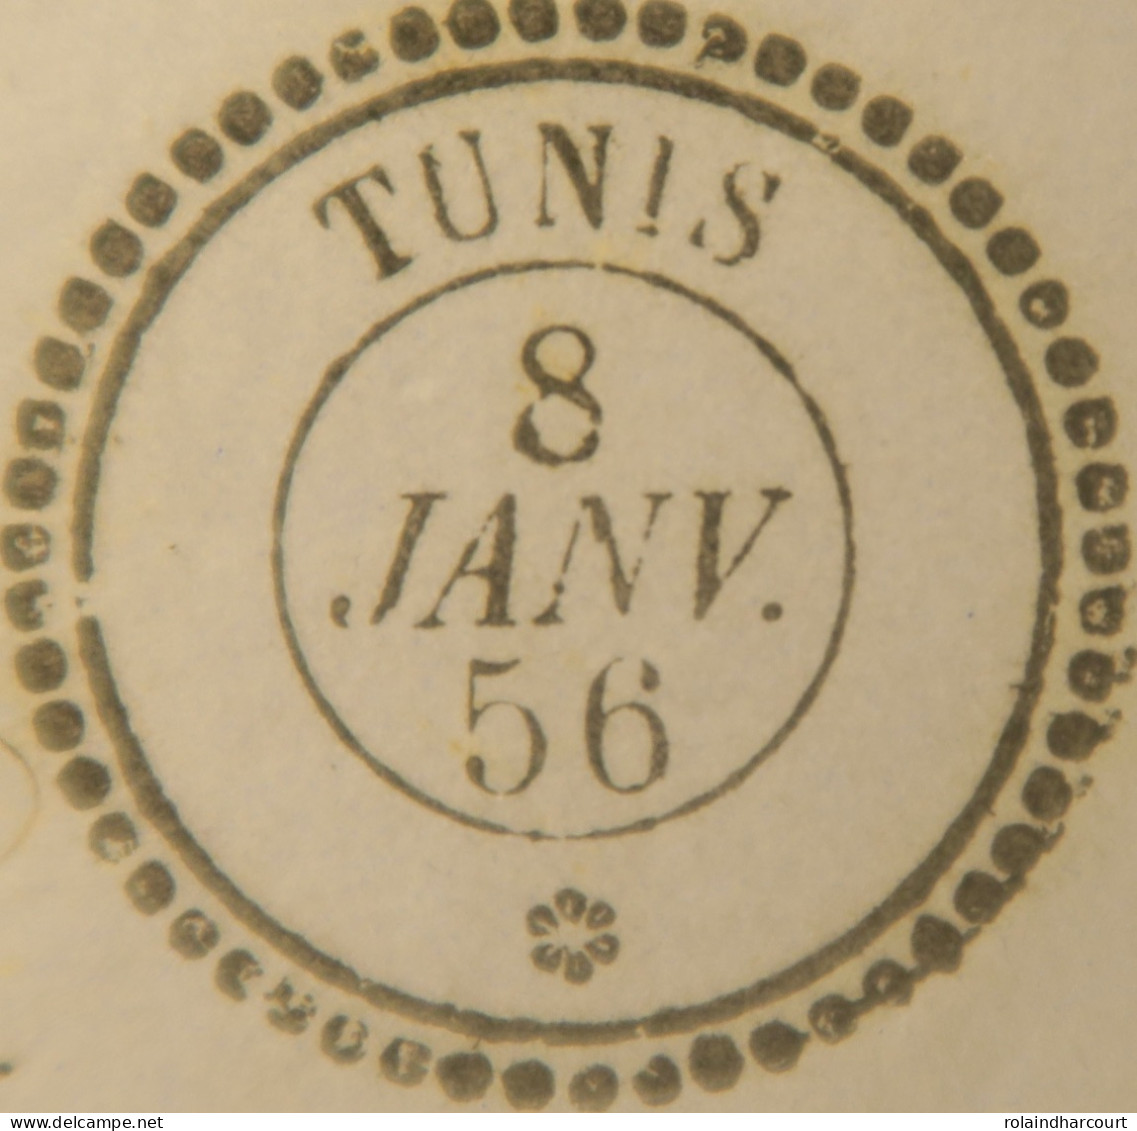 A550 - POSTE MARITIME - LETTRE (LAC) TUNIS (TUNISIE) 8 JANVIER 1856 à MARSEILLE (via BÔNE) - Maritime Post